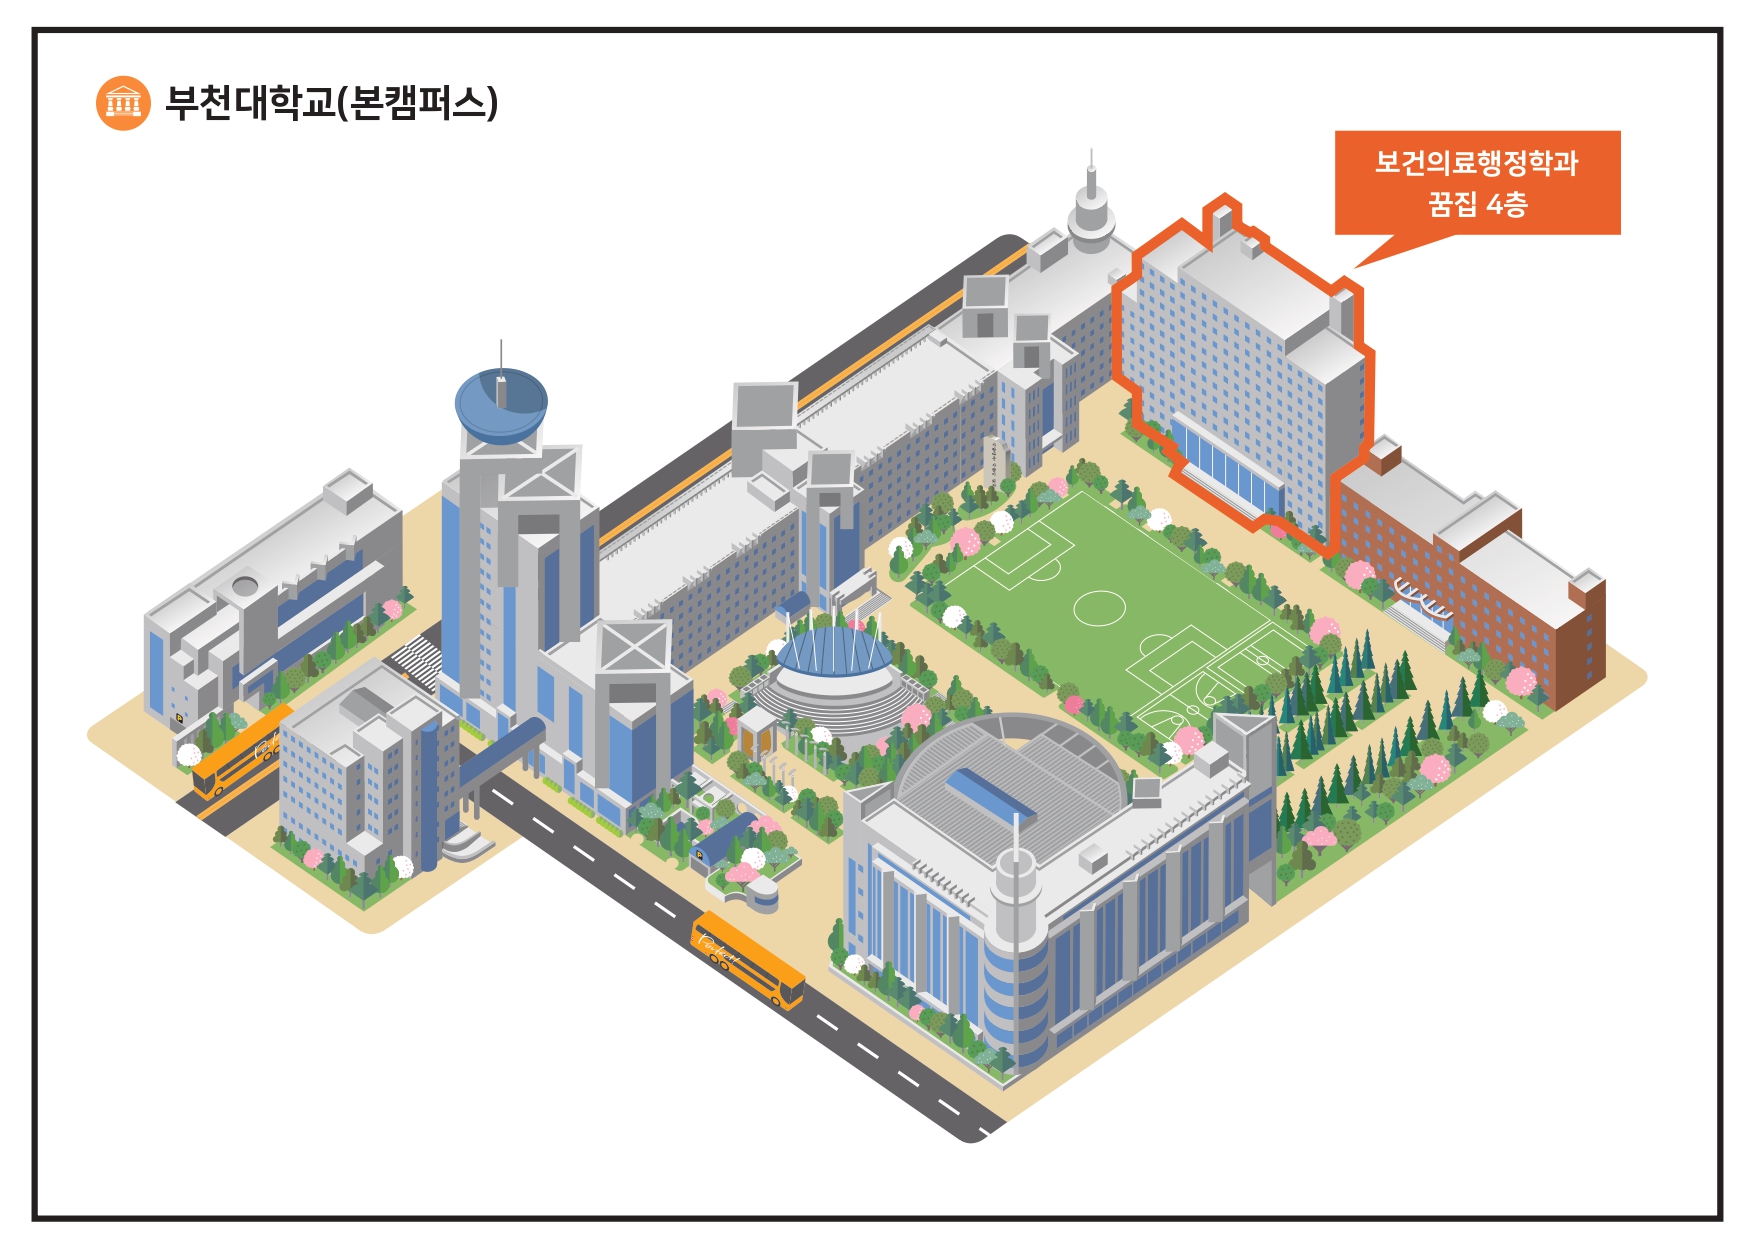 부천대학교(본캠퍼스) 보건의료행정과 꿈집 4층